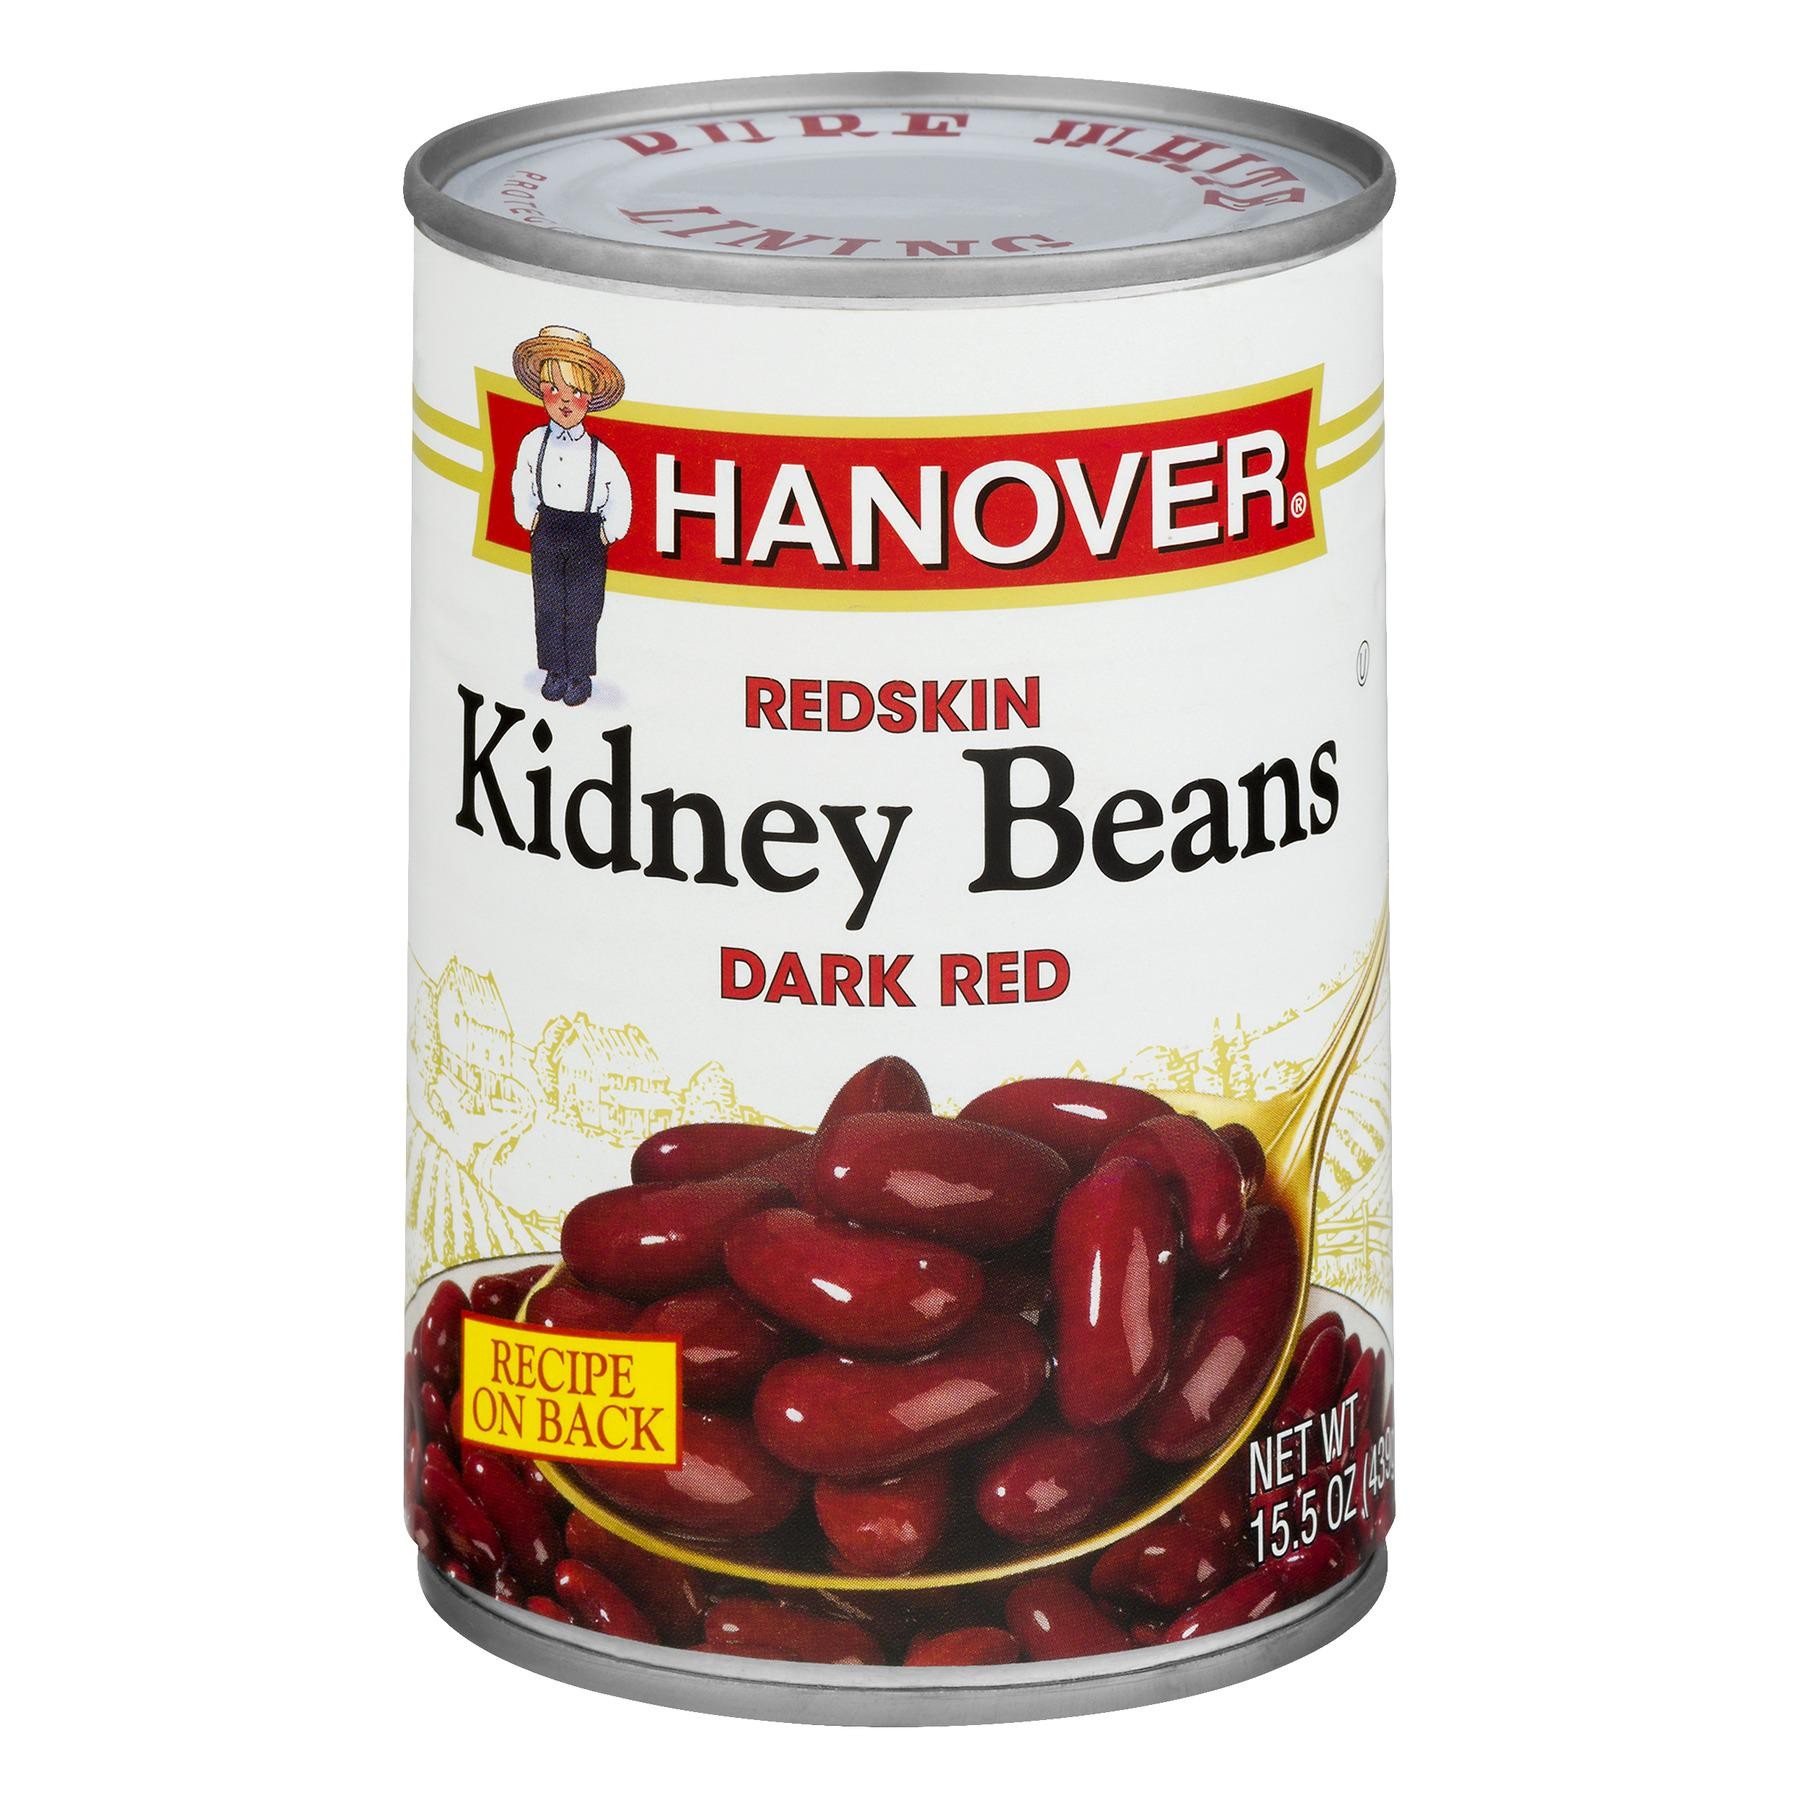 Hanover Redskin Kidney Beans Dark Red, 15.5 OZ